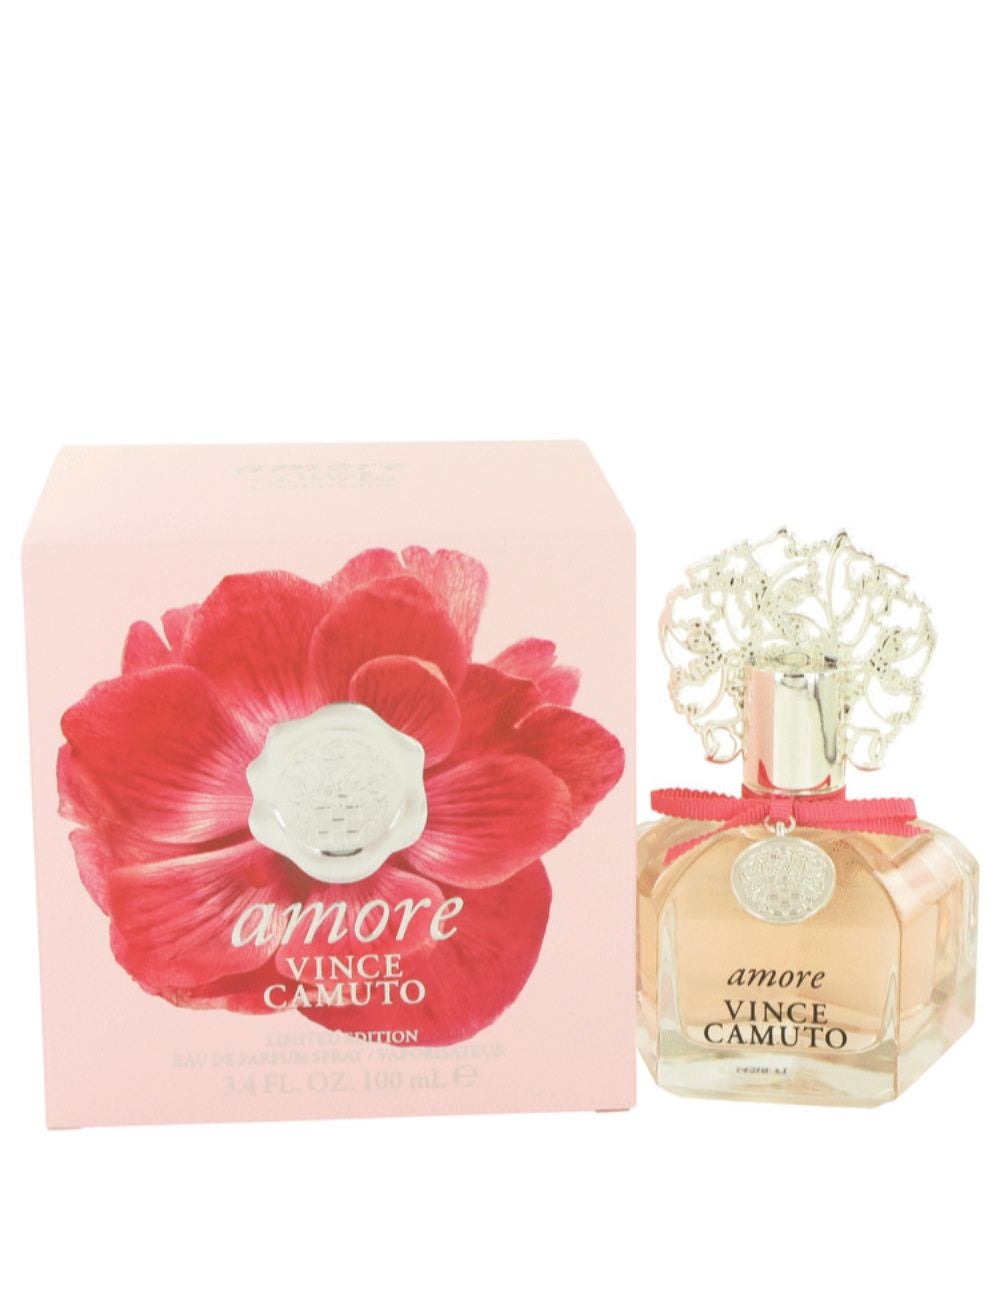 Buy Vince Camuto Amore Eau De Parfum 100ml Online - Shop Beauty & Personal  Care on Carrefour Saudi Arabia